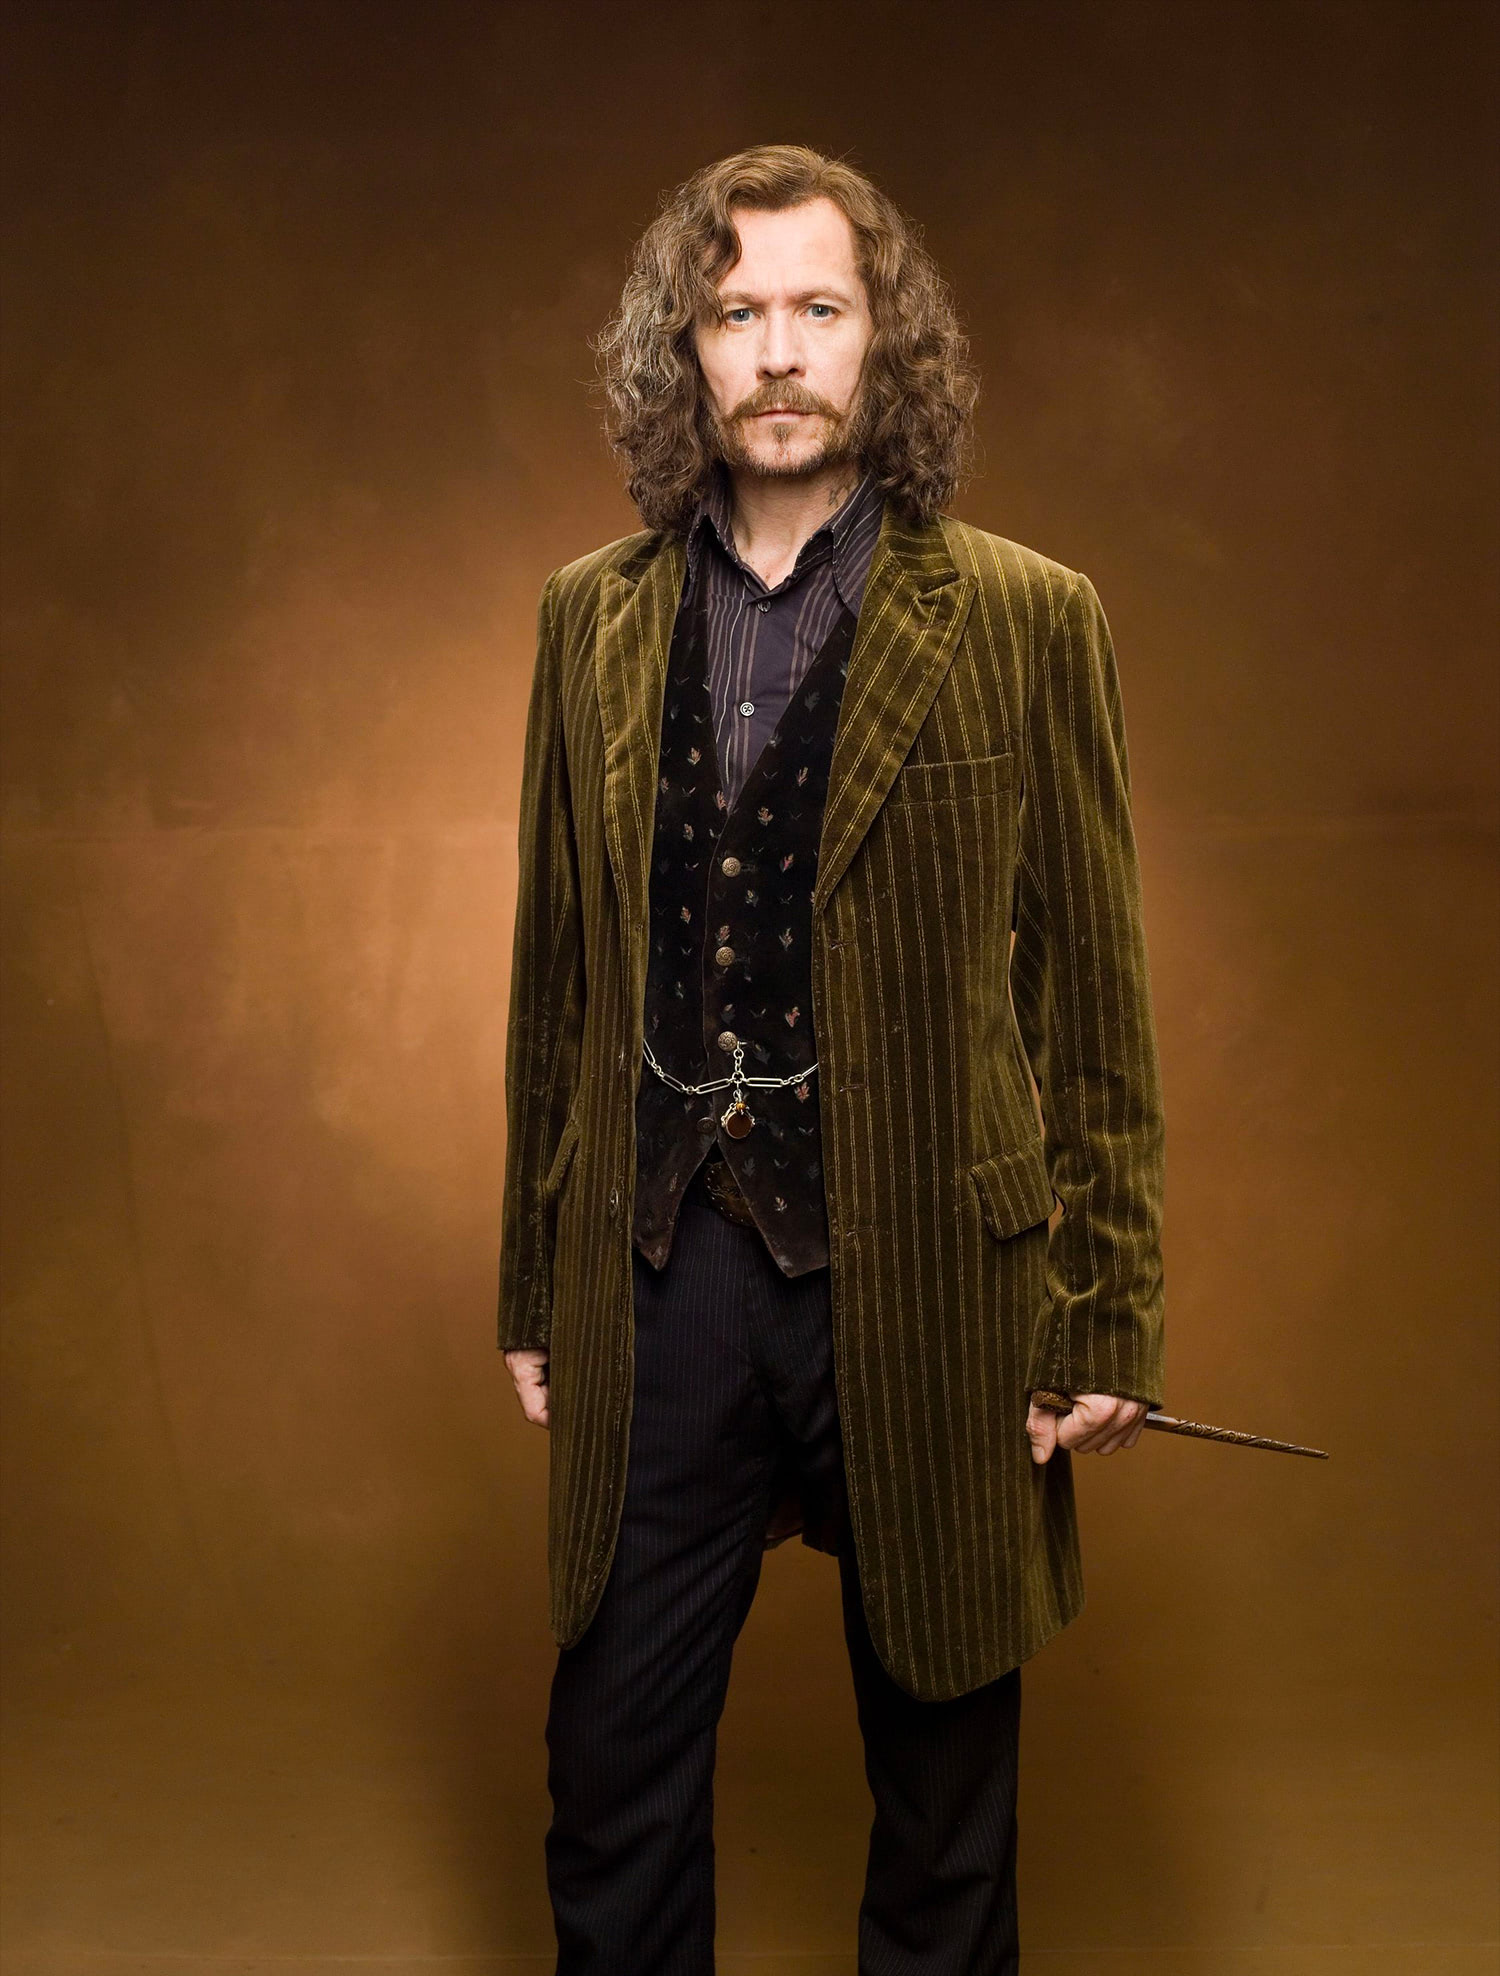 Portrait of Sirius Black